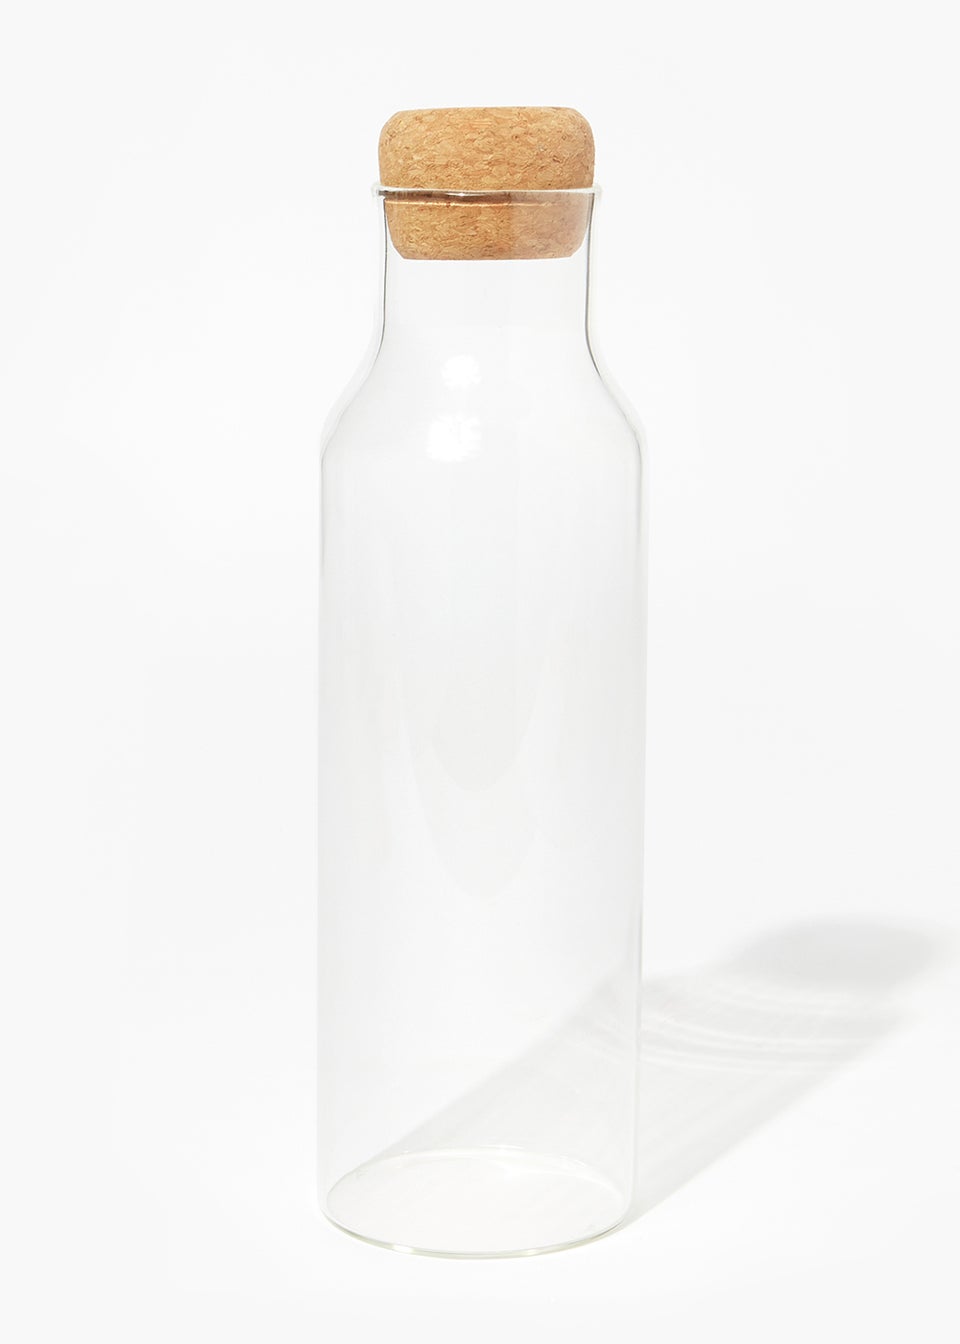 Large Cork Lid Glass Bottle (28cm x 8cm)